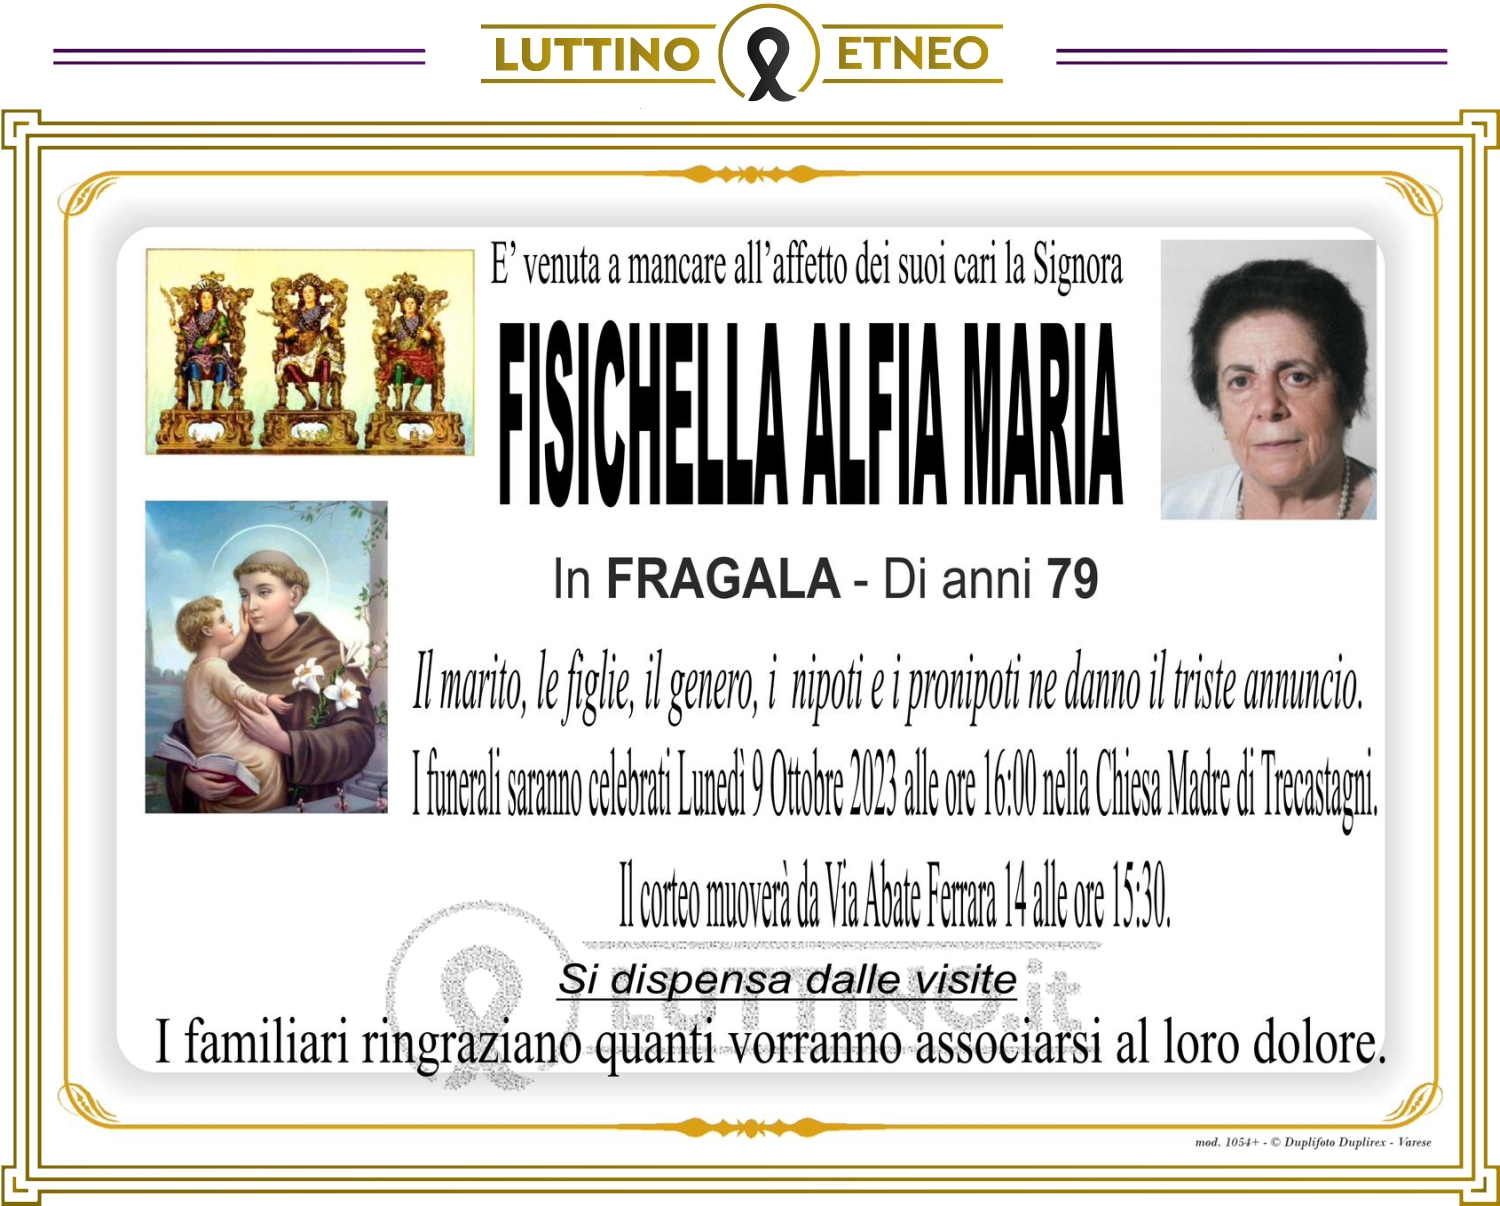 Alfia Maria Fisichella